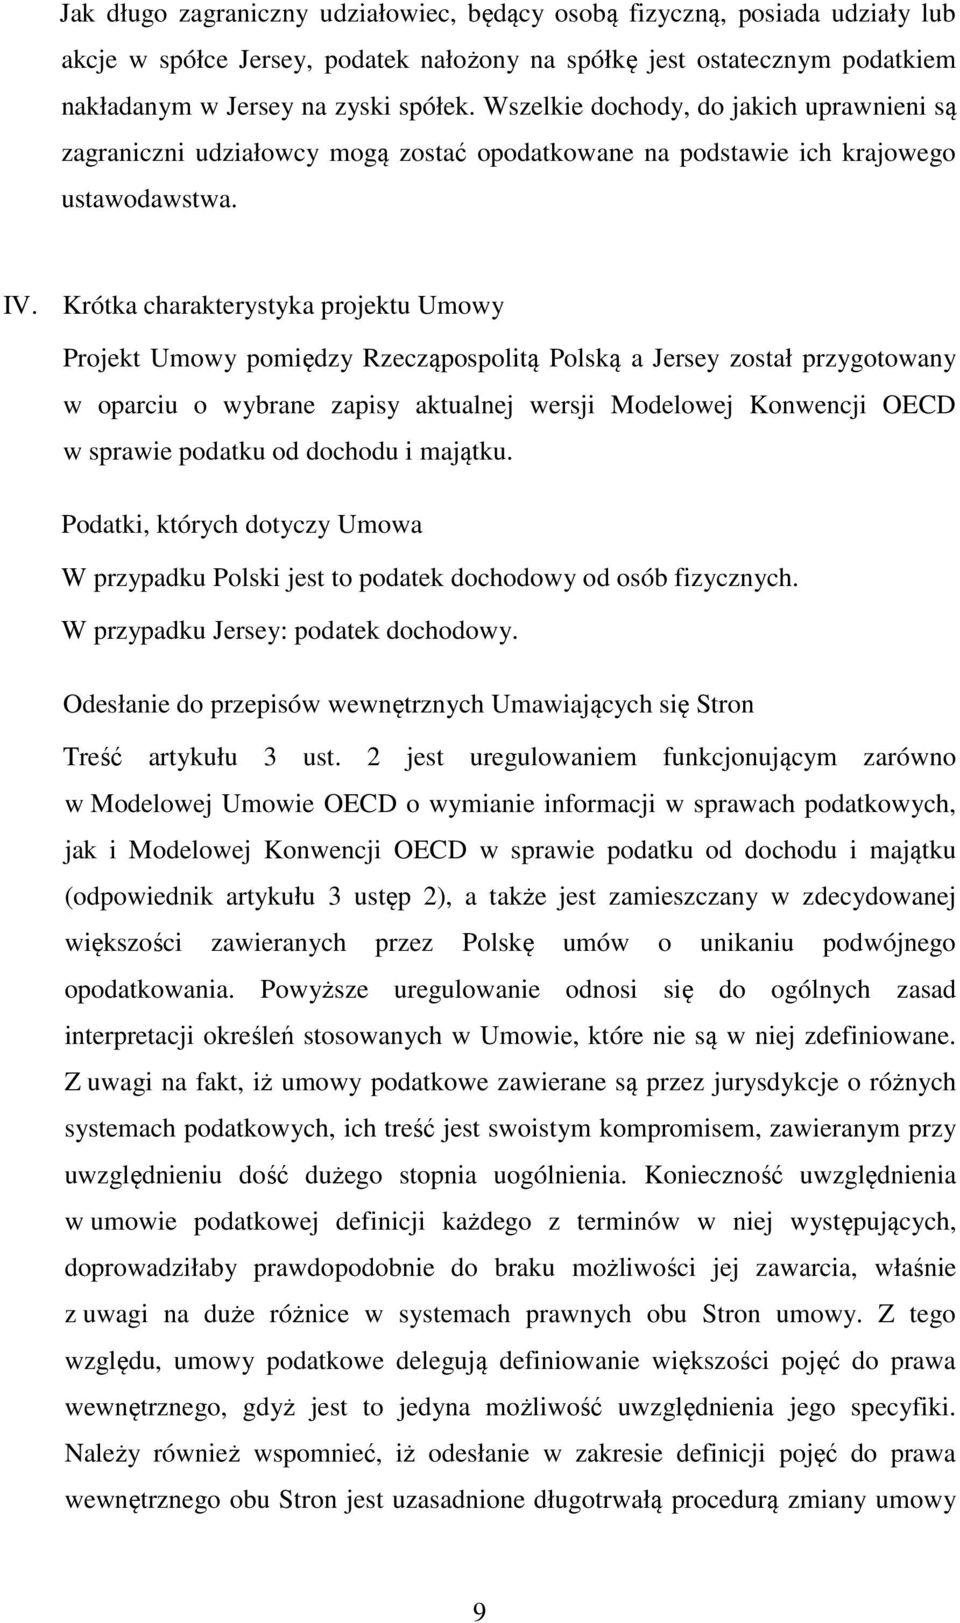 Krótka charakterystyka projektu Umowy Projekt Umowy pomiędzy Rzecząpospolitą Polską a Jersey został przygotowany w oparciu o wybrane zapisy aktualnej wersji Modelowej Konwencji OECD w sprawie podatku